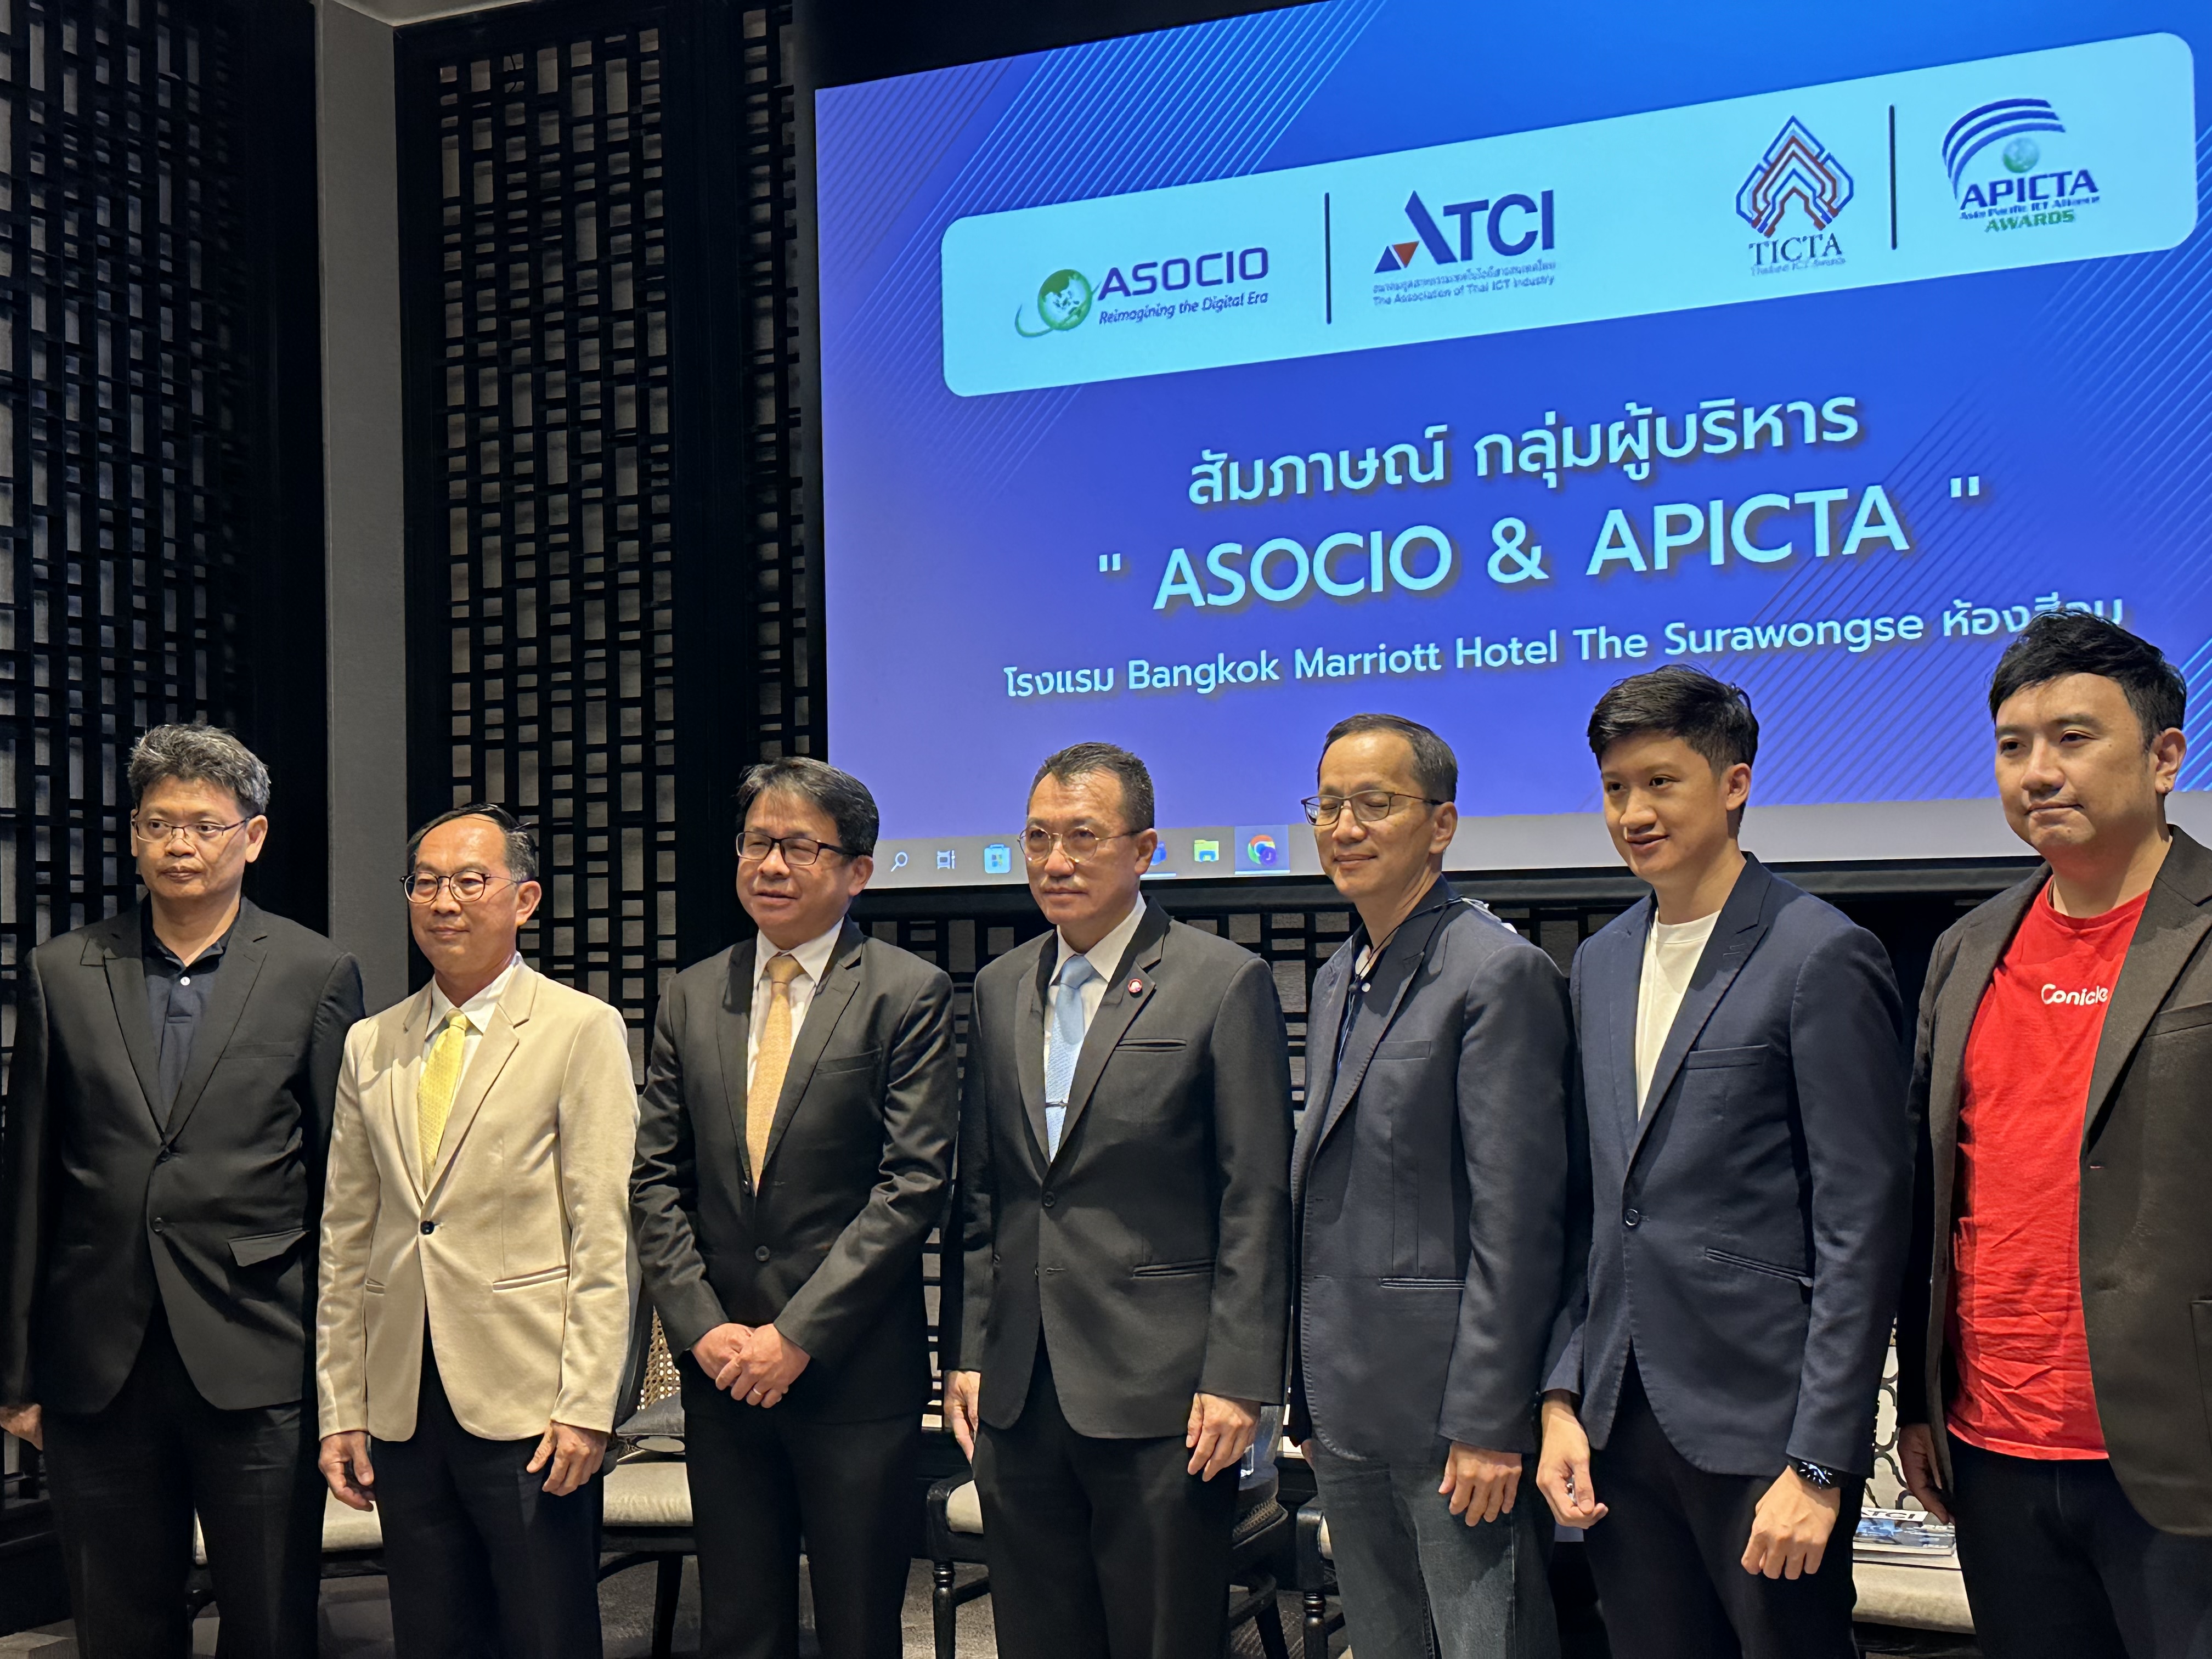 ATCI ฉลองอุตฯ ไอทีไทย 8 องค์กรใหญ่ คว้ารางวัลนานาชาติ ASOCIO 